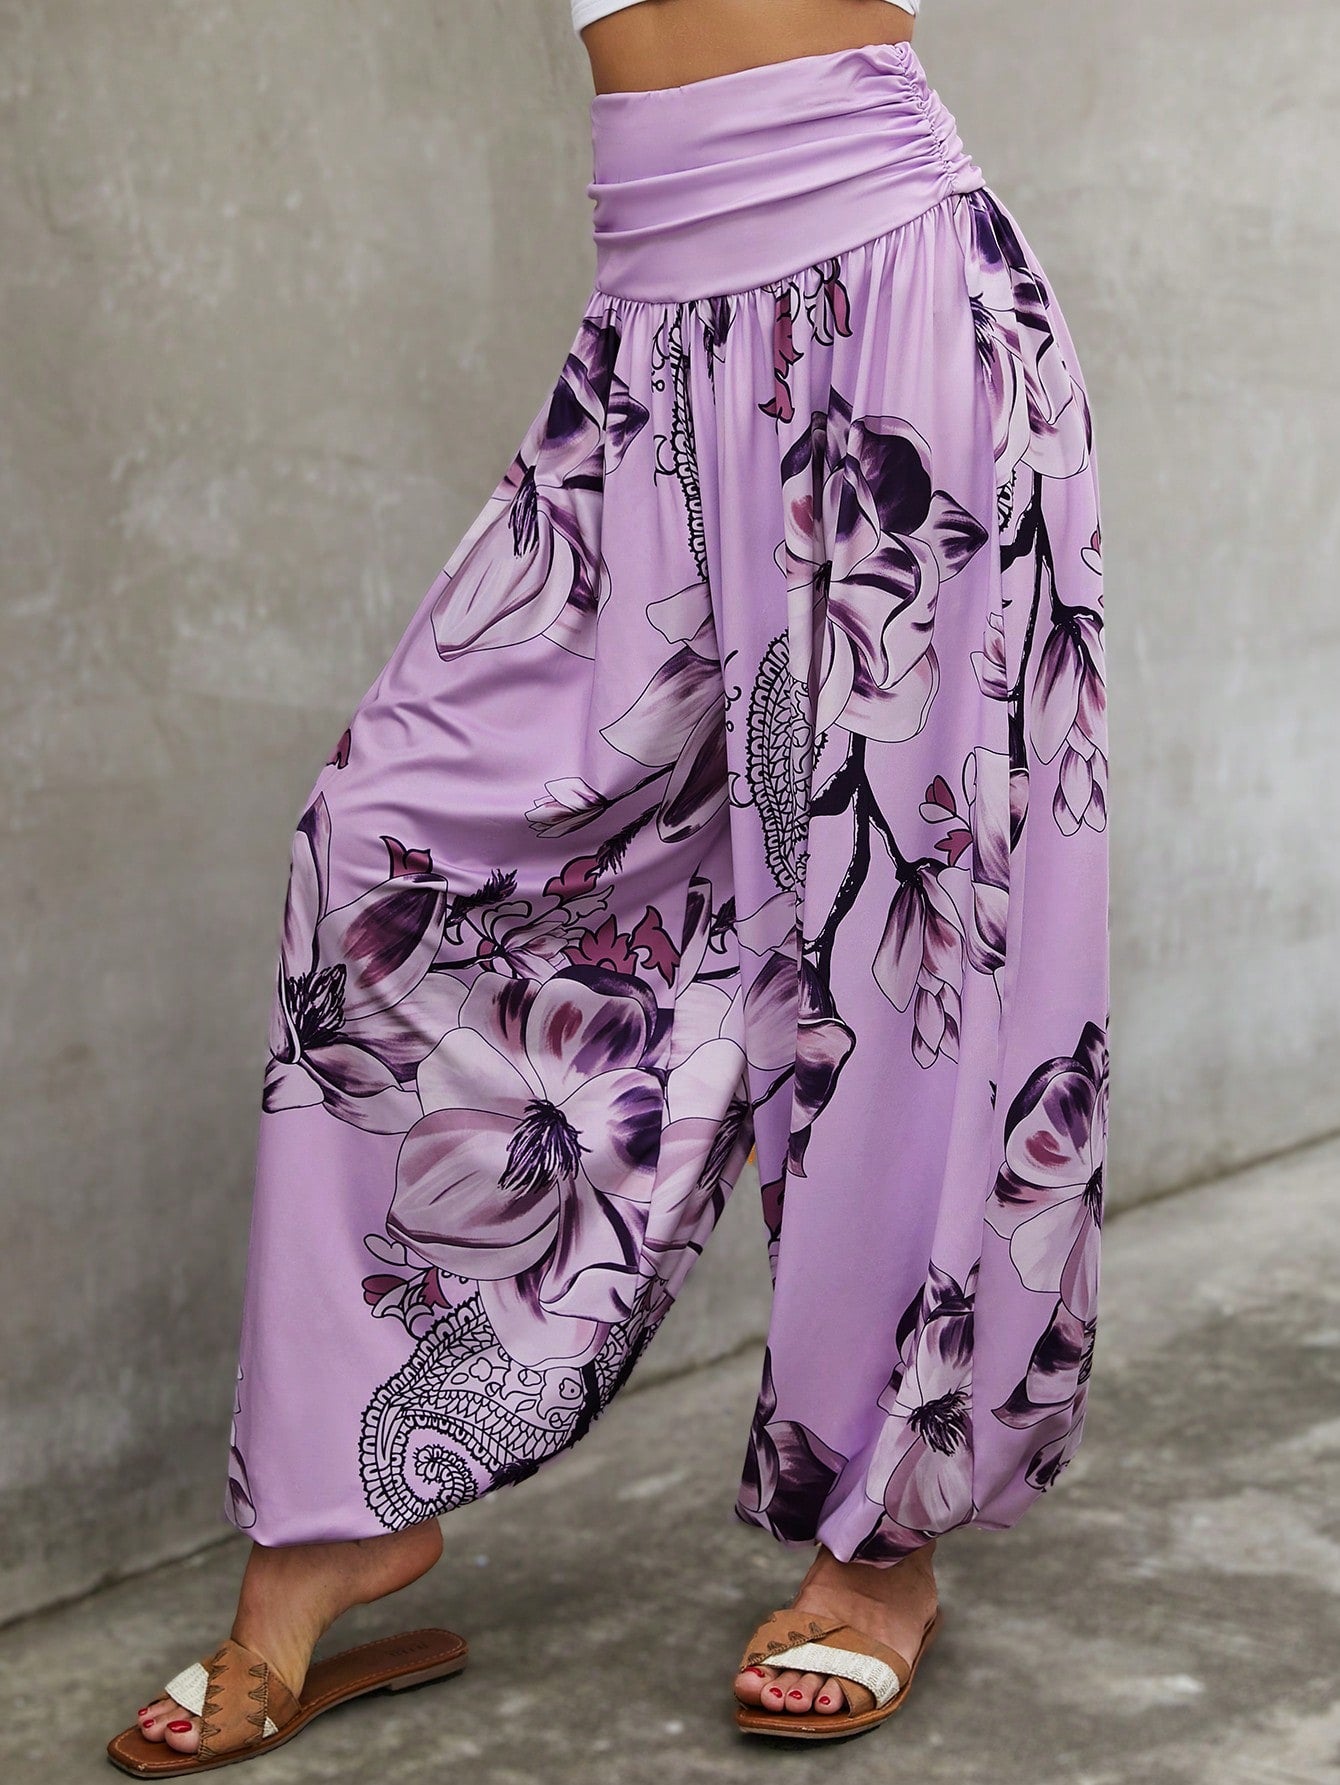 Pantalones bohemios gitanos con cintura ancha y pliegues florales